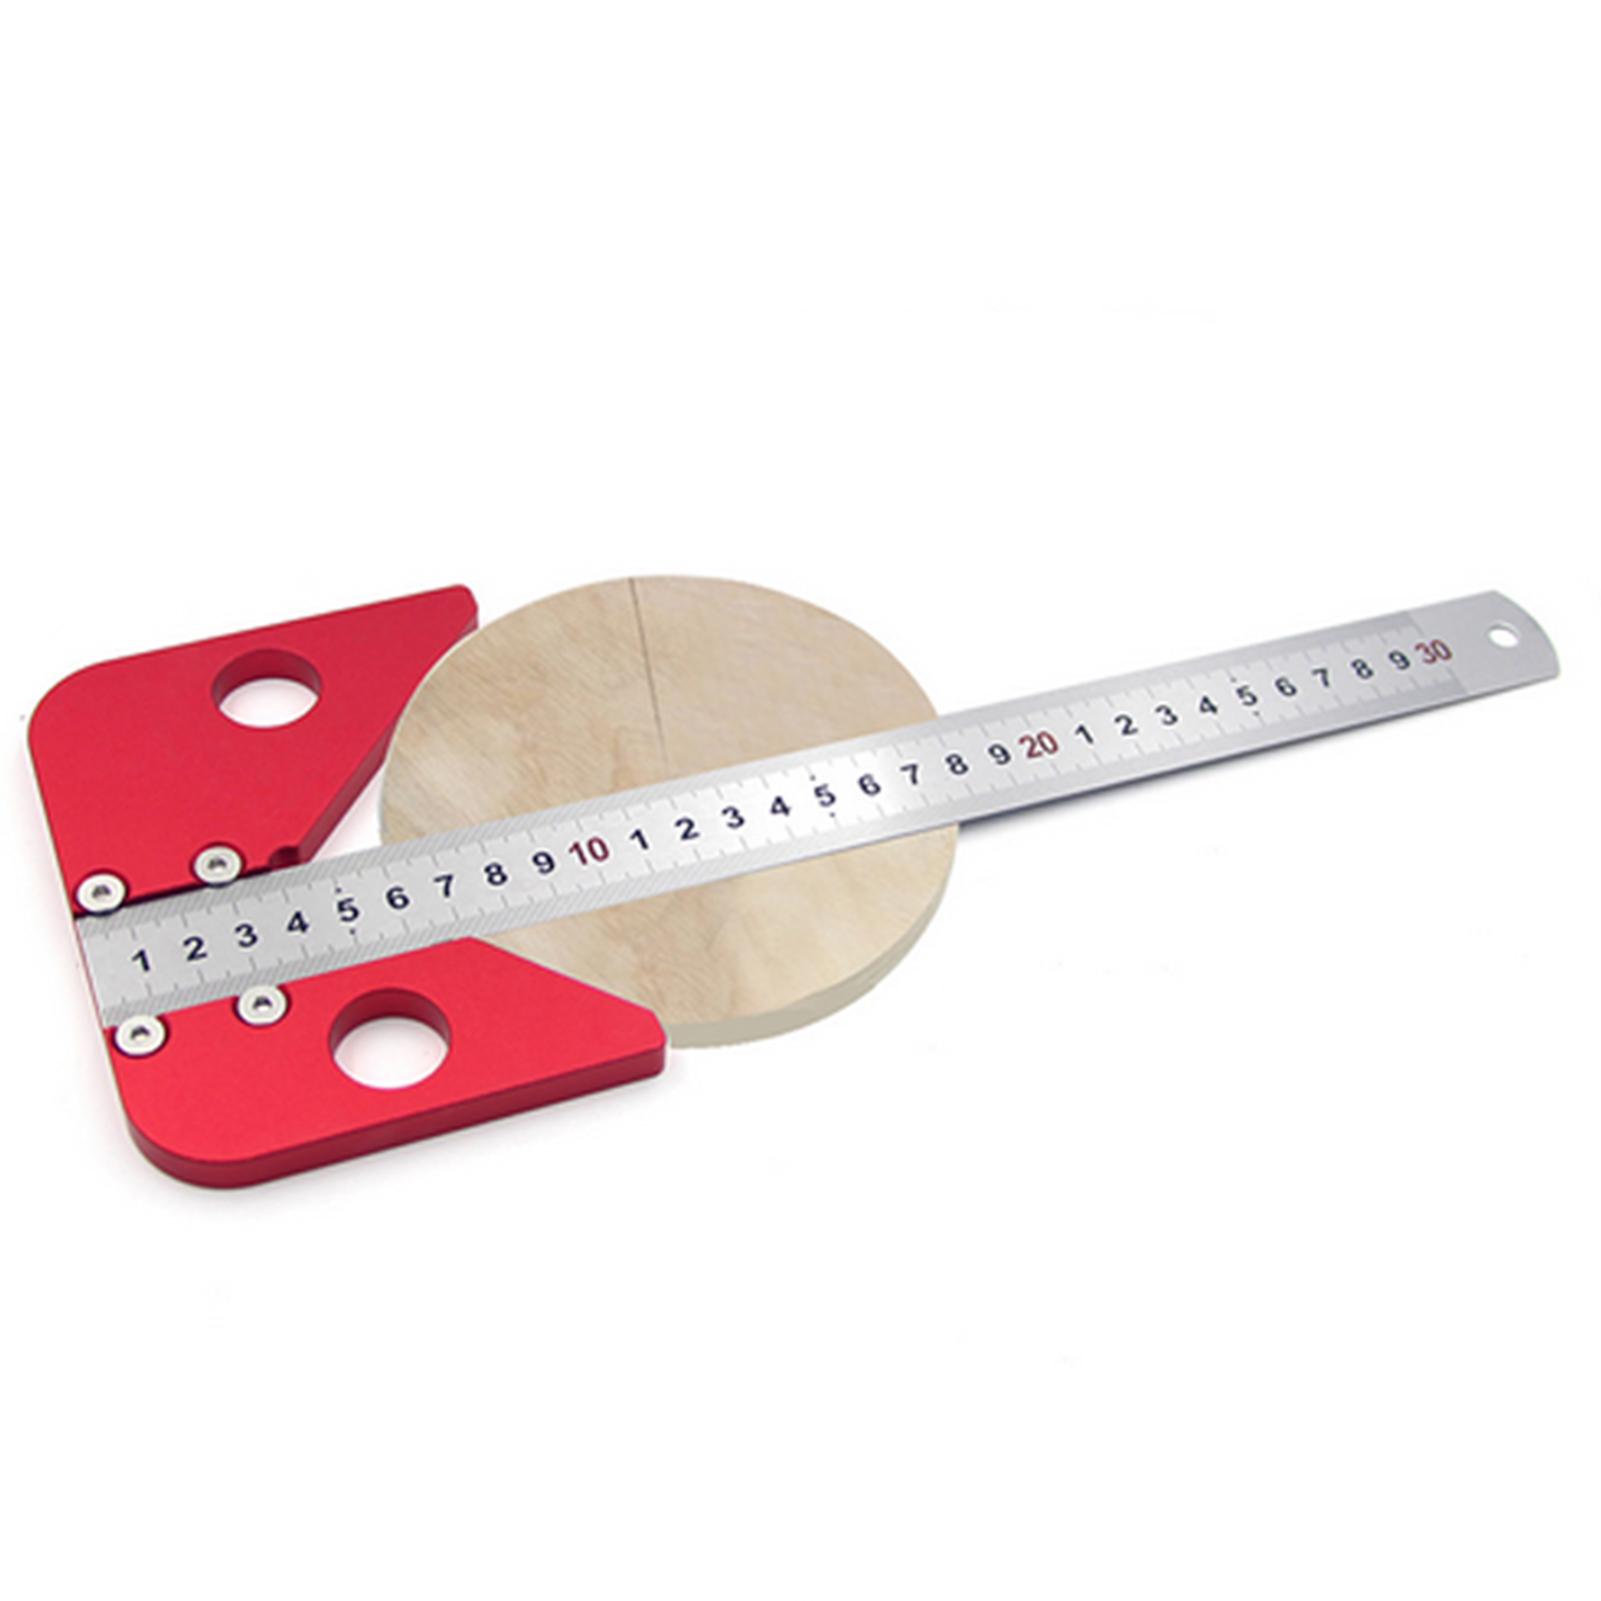 Center Scribe Center Finder Measuring Tool Woodworking Line Caliber Gauge 45/90 Degree Right Angle Line Gauge Carpenter